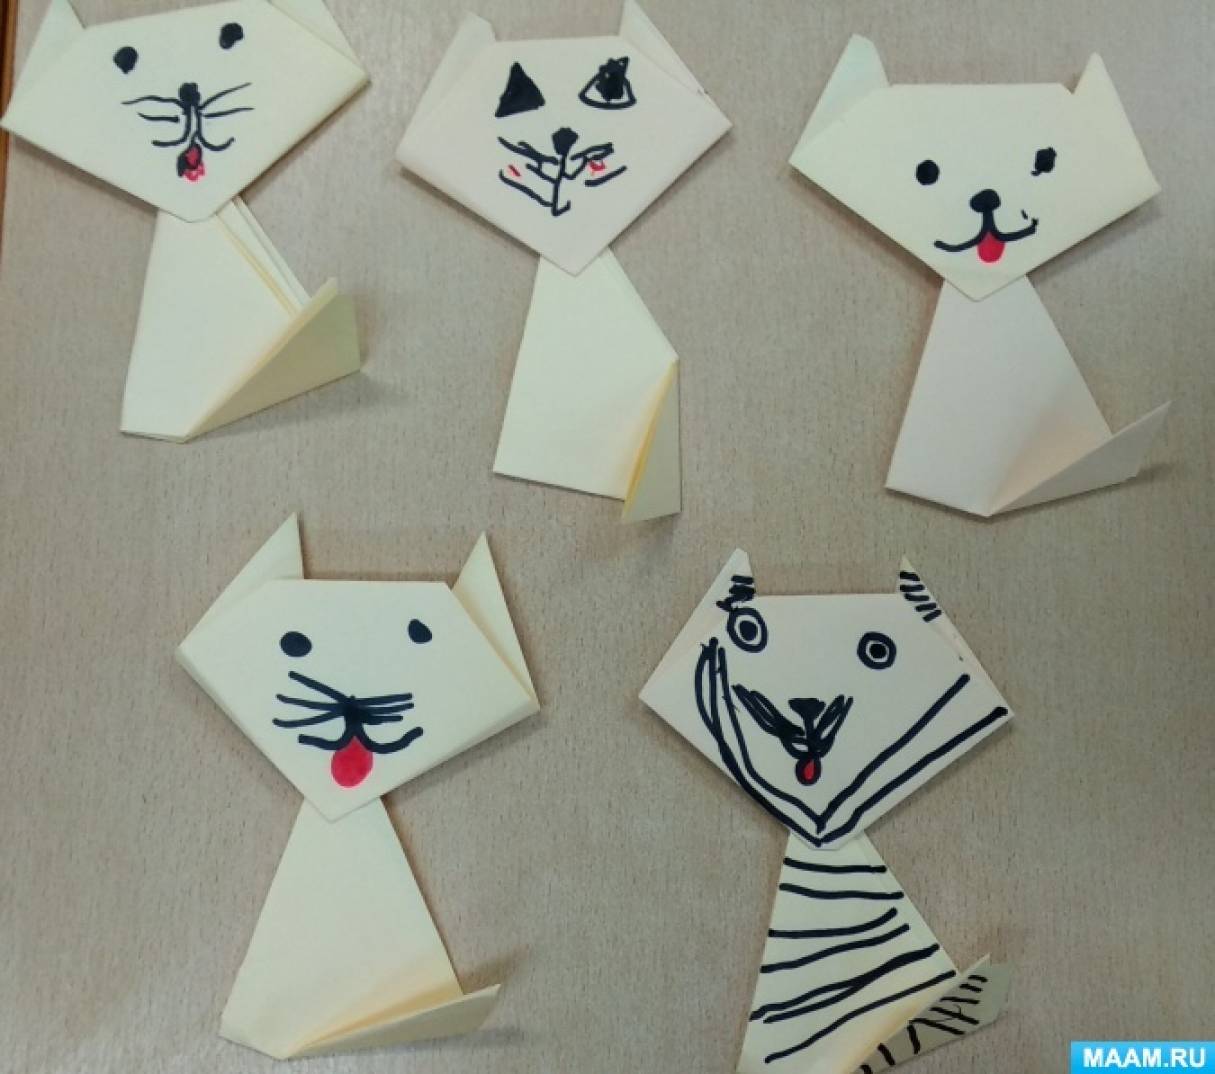 Мастер-класс по конструированию из бумаги в технике оригами «Кошечка» (14  фото). Воспитателям детских садов, школьным учителям и педагогам - Маам.ру